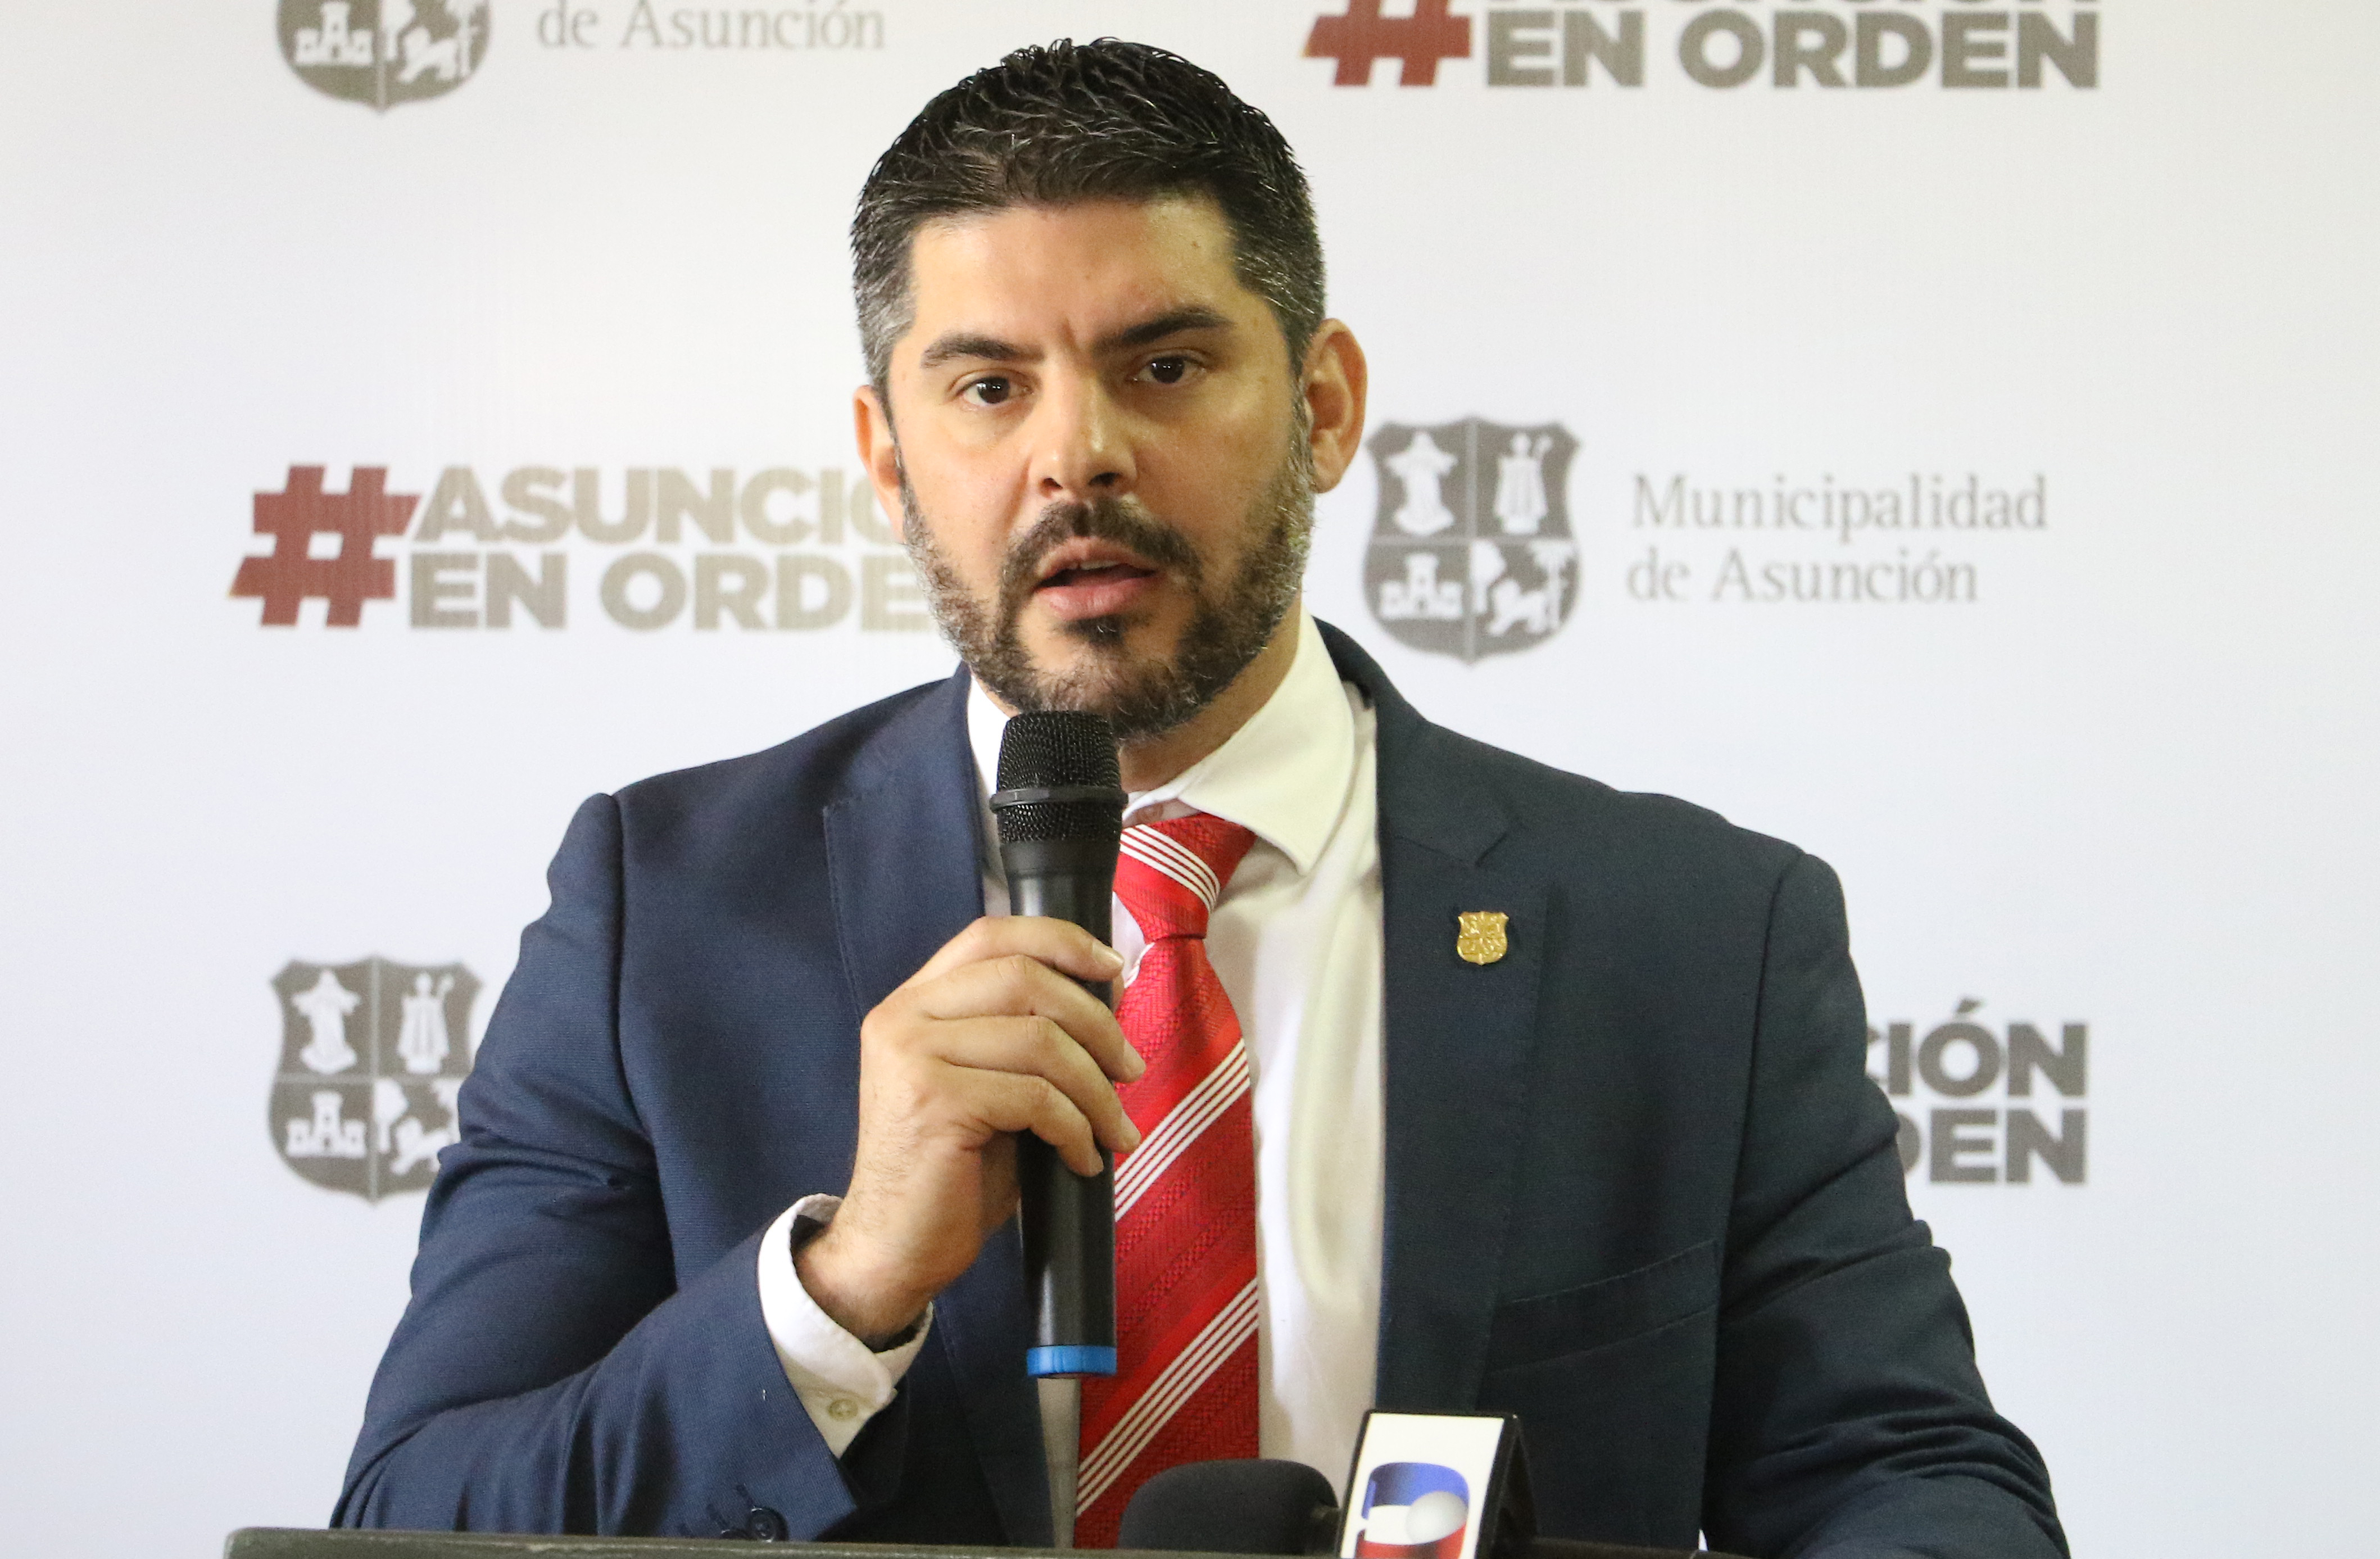 Rematarán casas residenciales por no pagar impuestos en Asunción